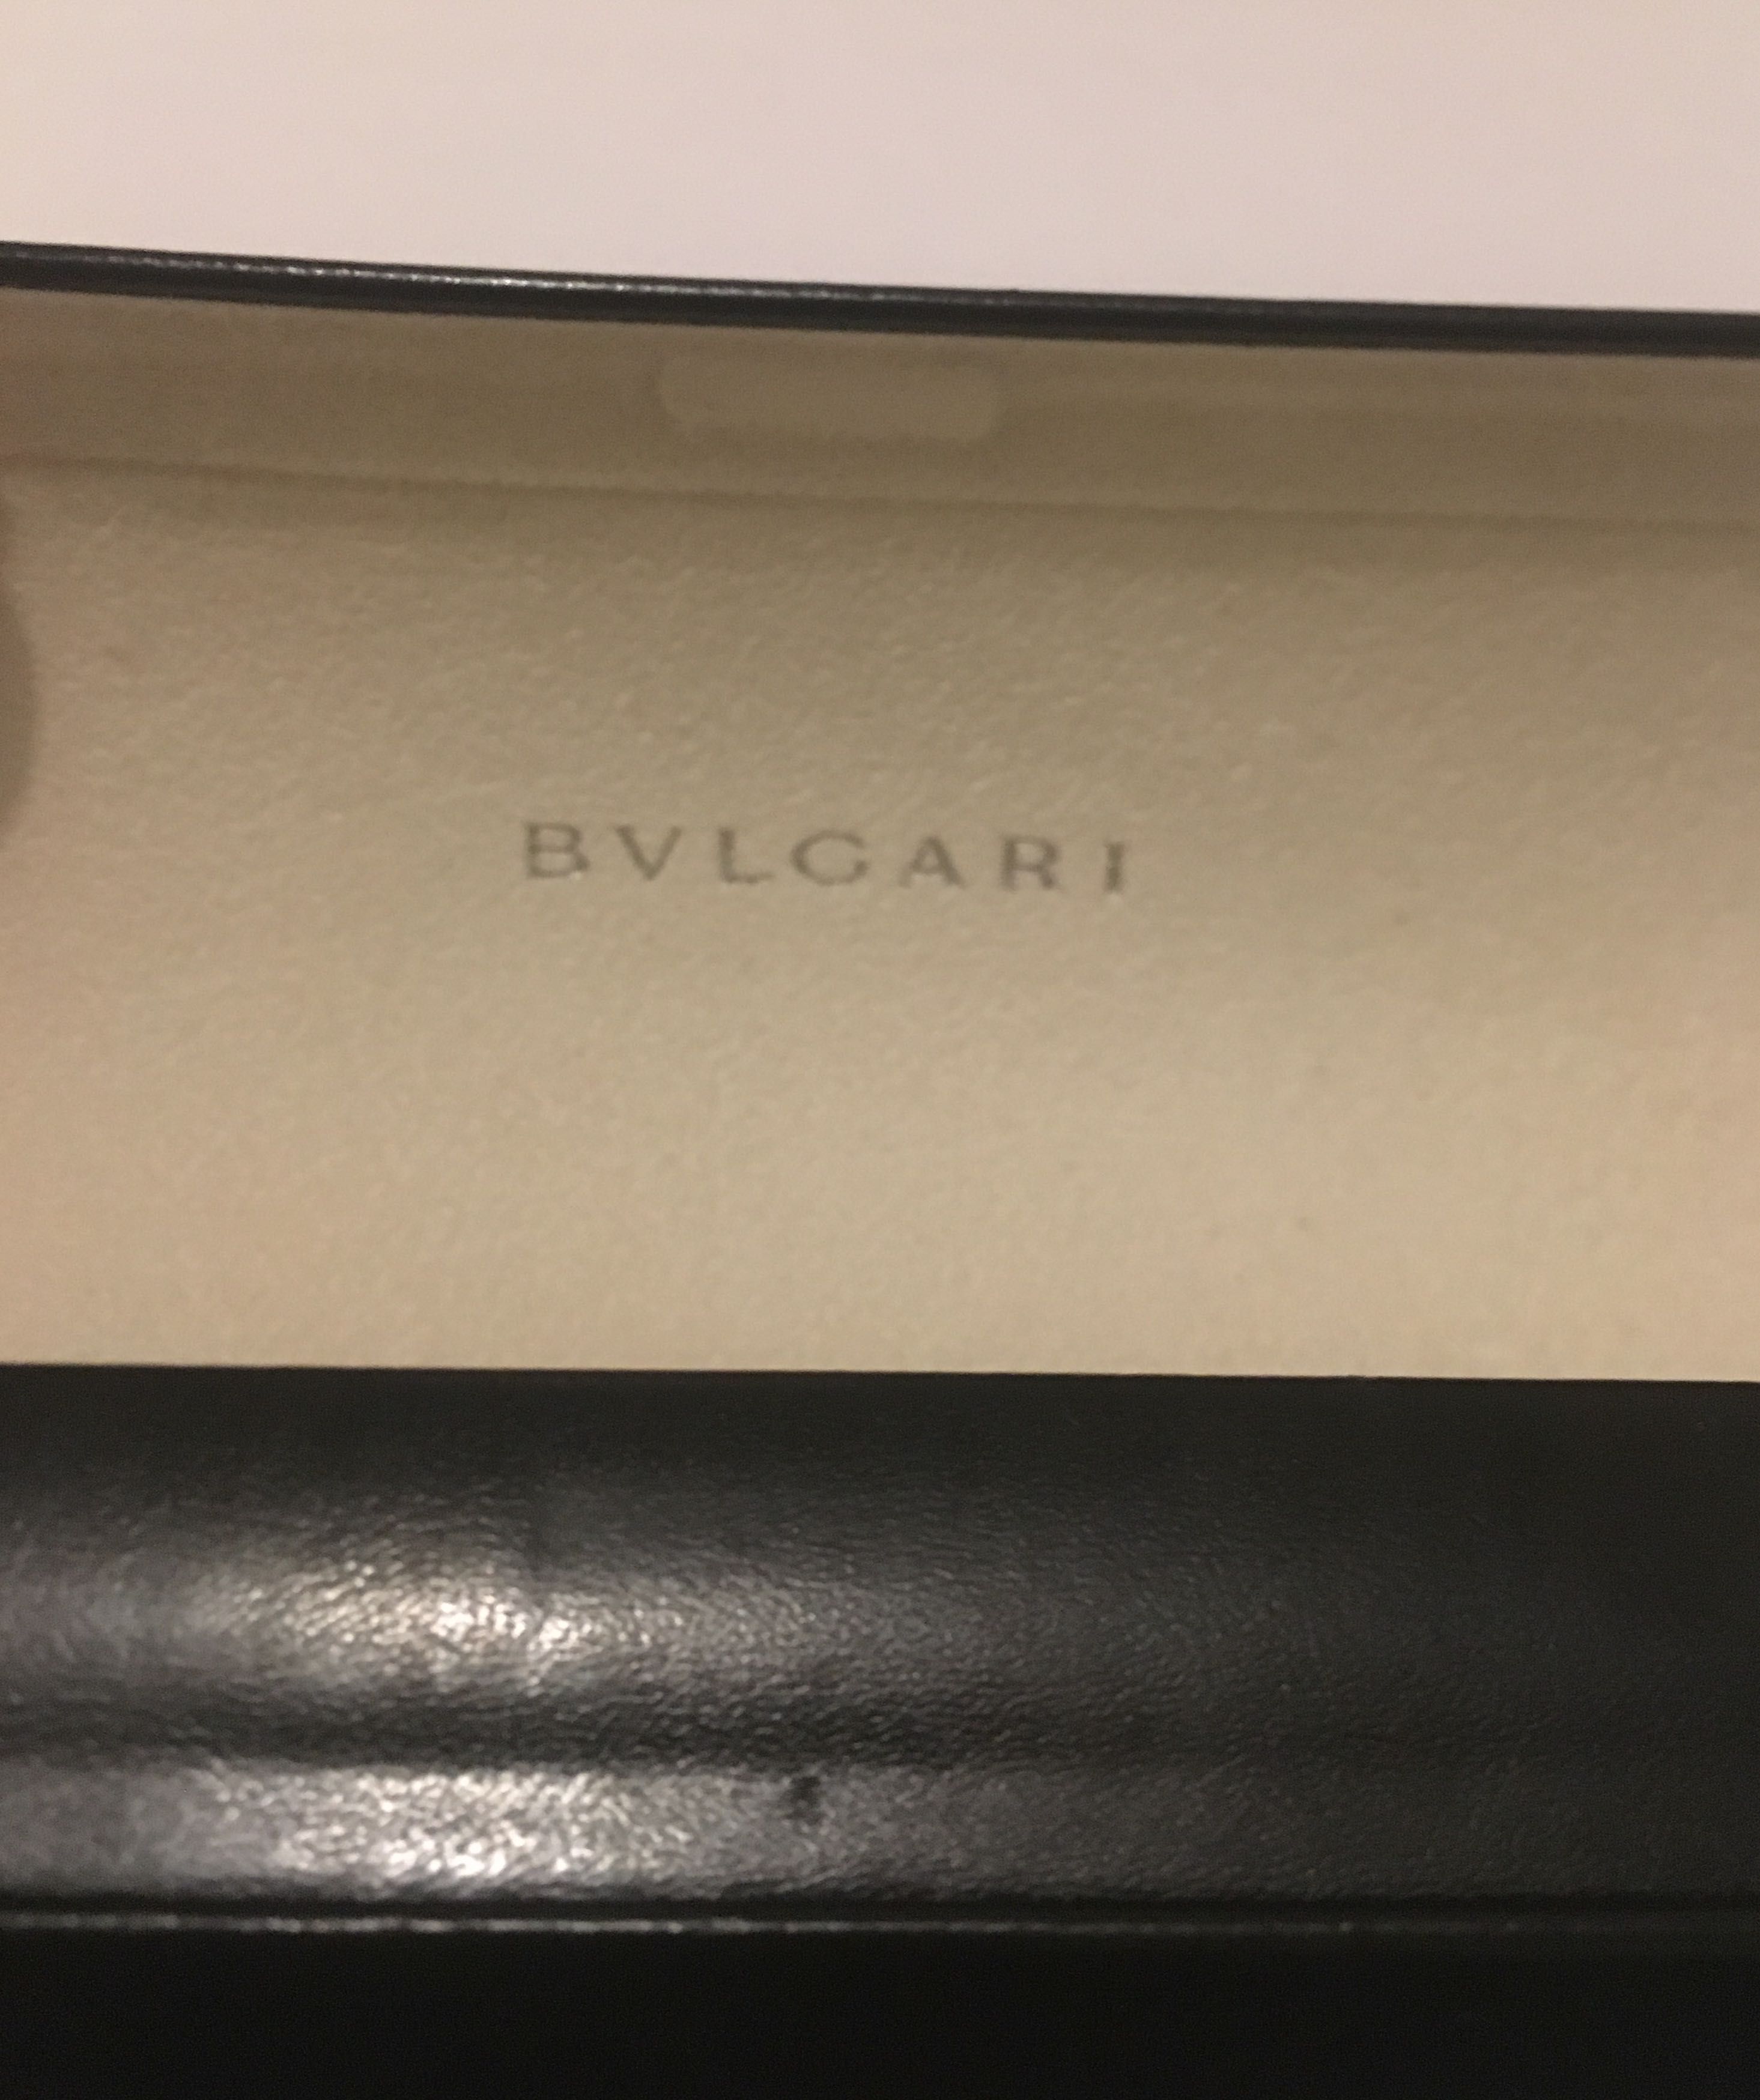 Caixa de óculos marca Bvlgari